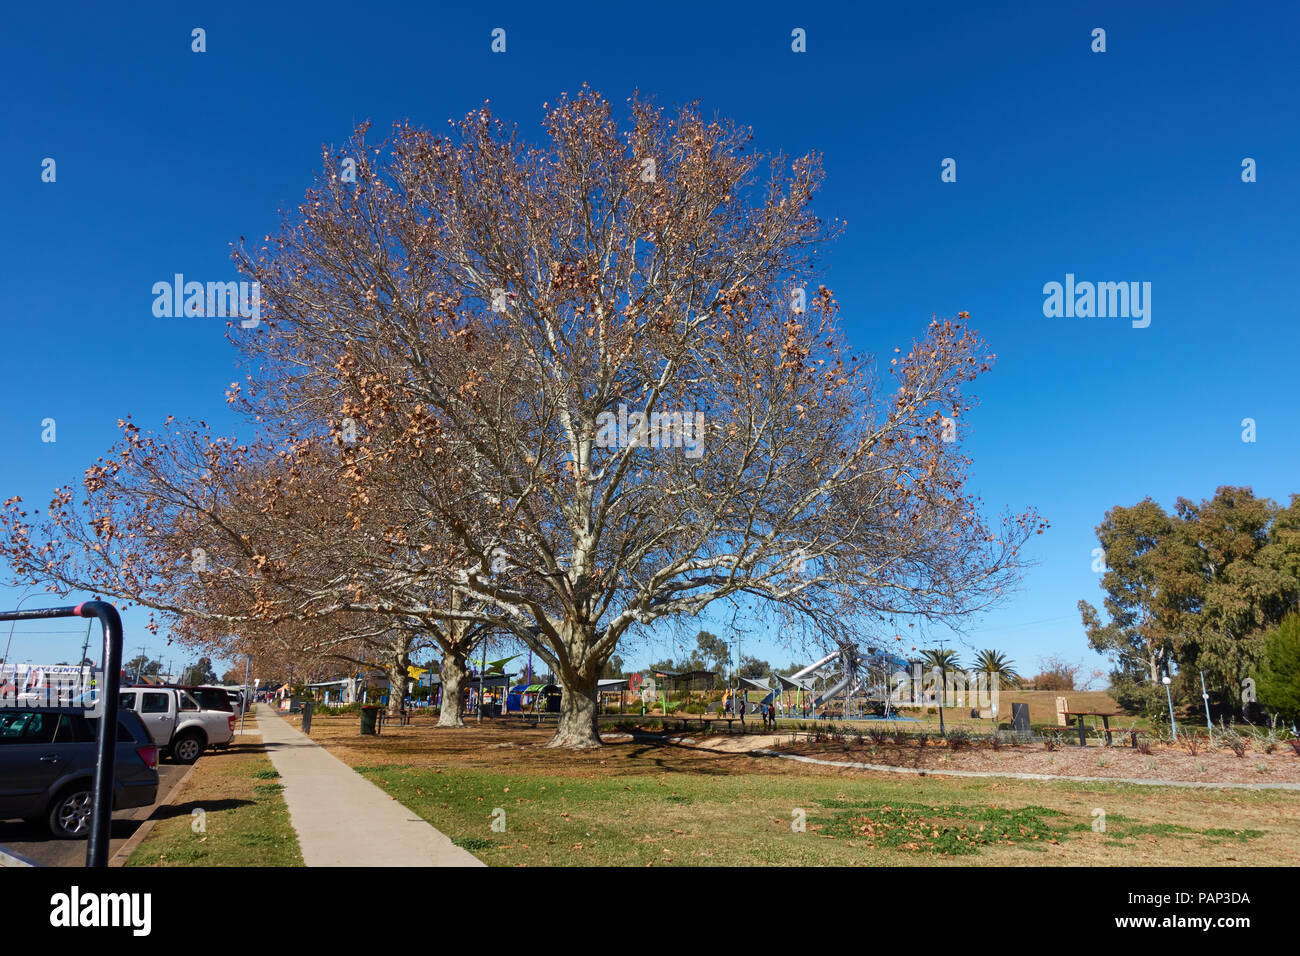 London Plane Tree in Winter mit Kinderspielplatz im Hintergrund. Den Bicentennial Park Tamworth NSW Australien. Stockfoto